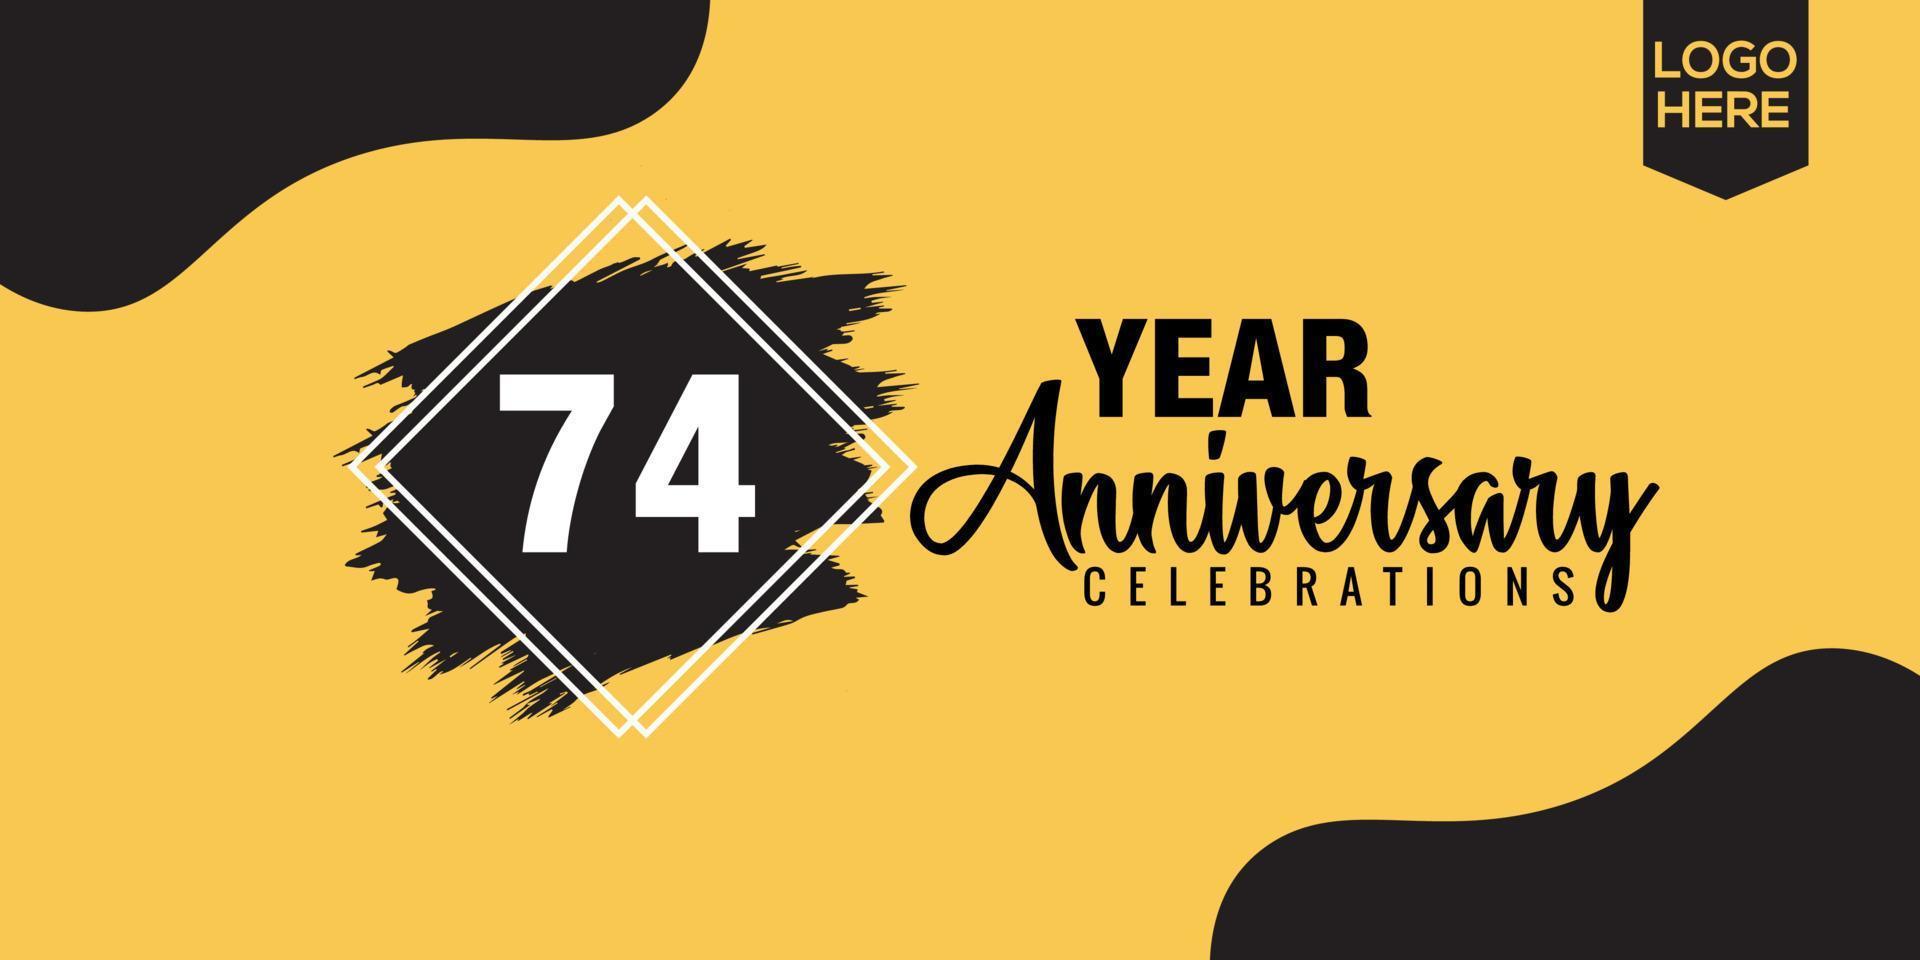 74th anni anniversario celebrazione logo design con nero spazzola e giallo colore con nero astratto vettore illustrazione